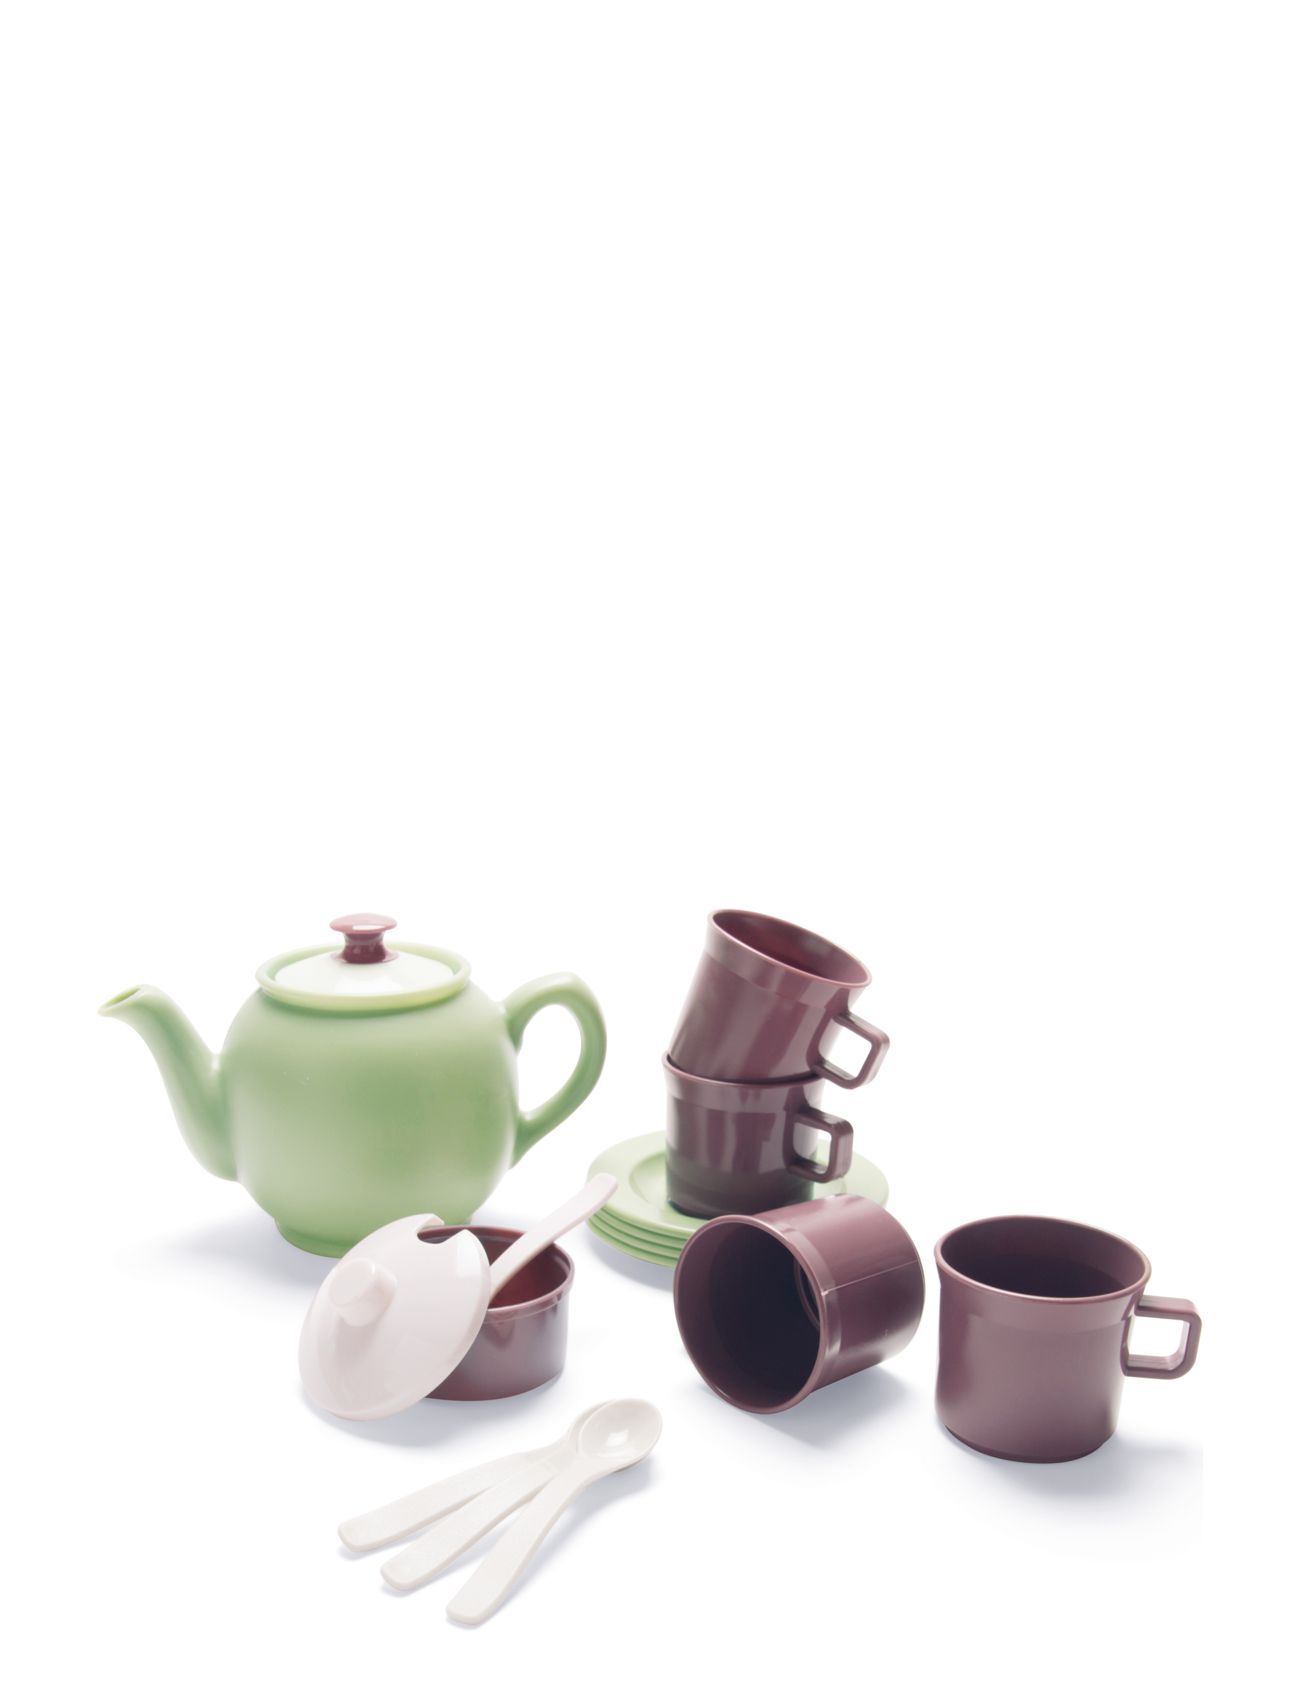 Dantoy Green Gardren Tea Set In Box Toys Toy Kitchen & Accessories Coffee & Tee Sets Multi/mønstret Dantoy